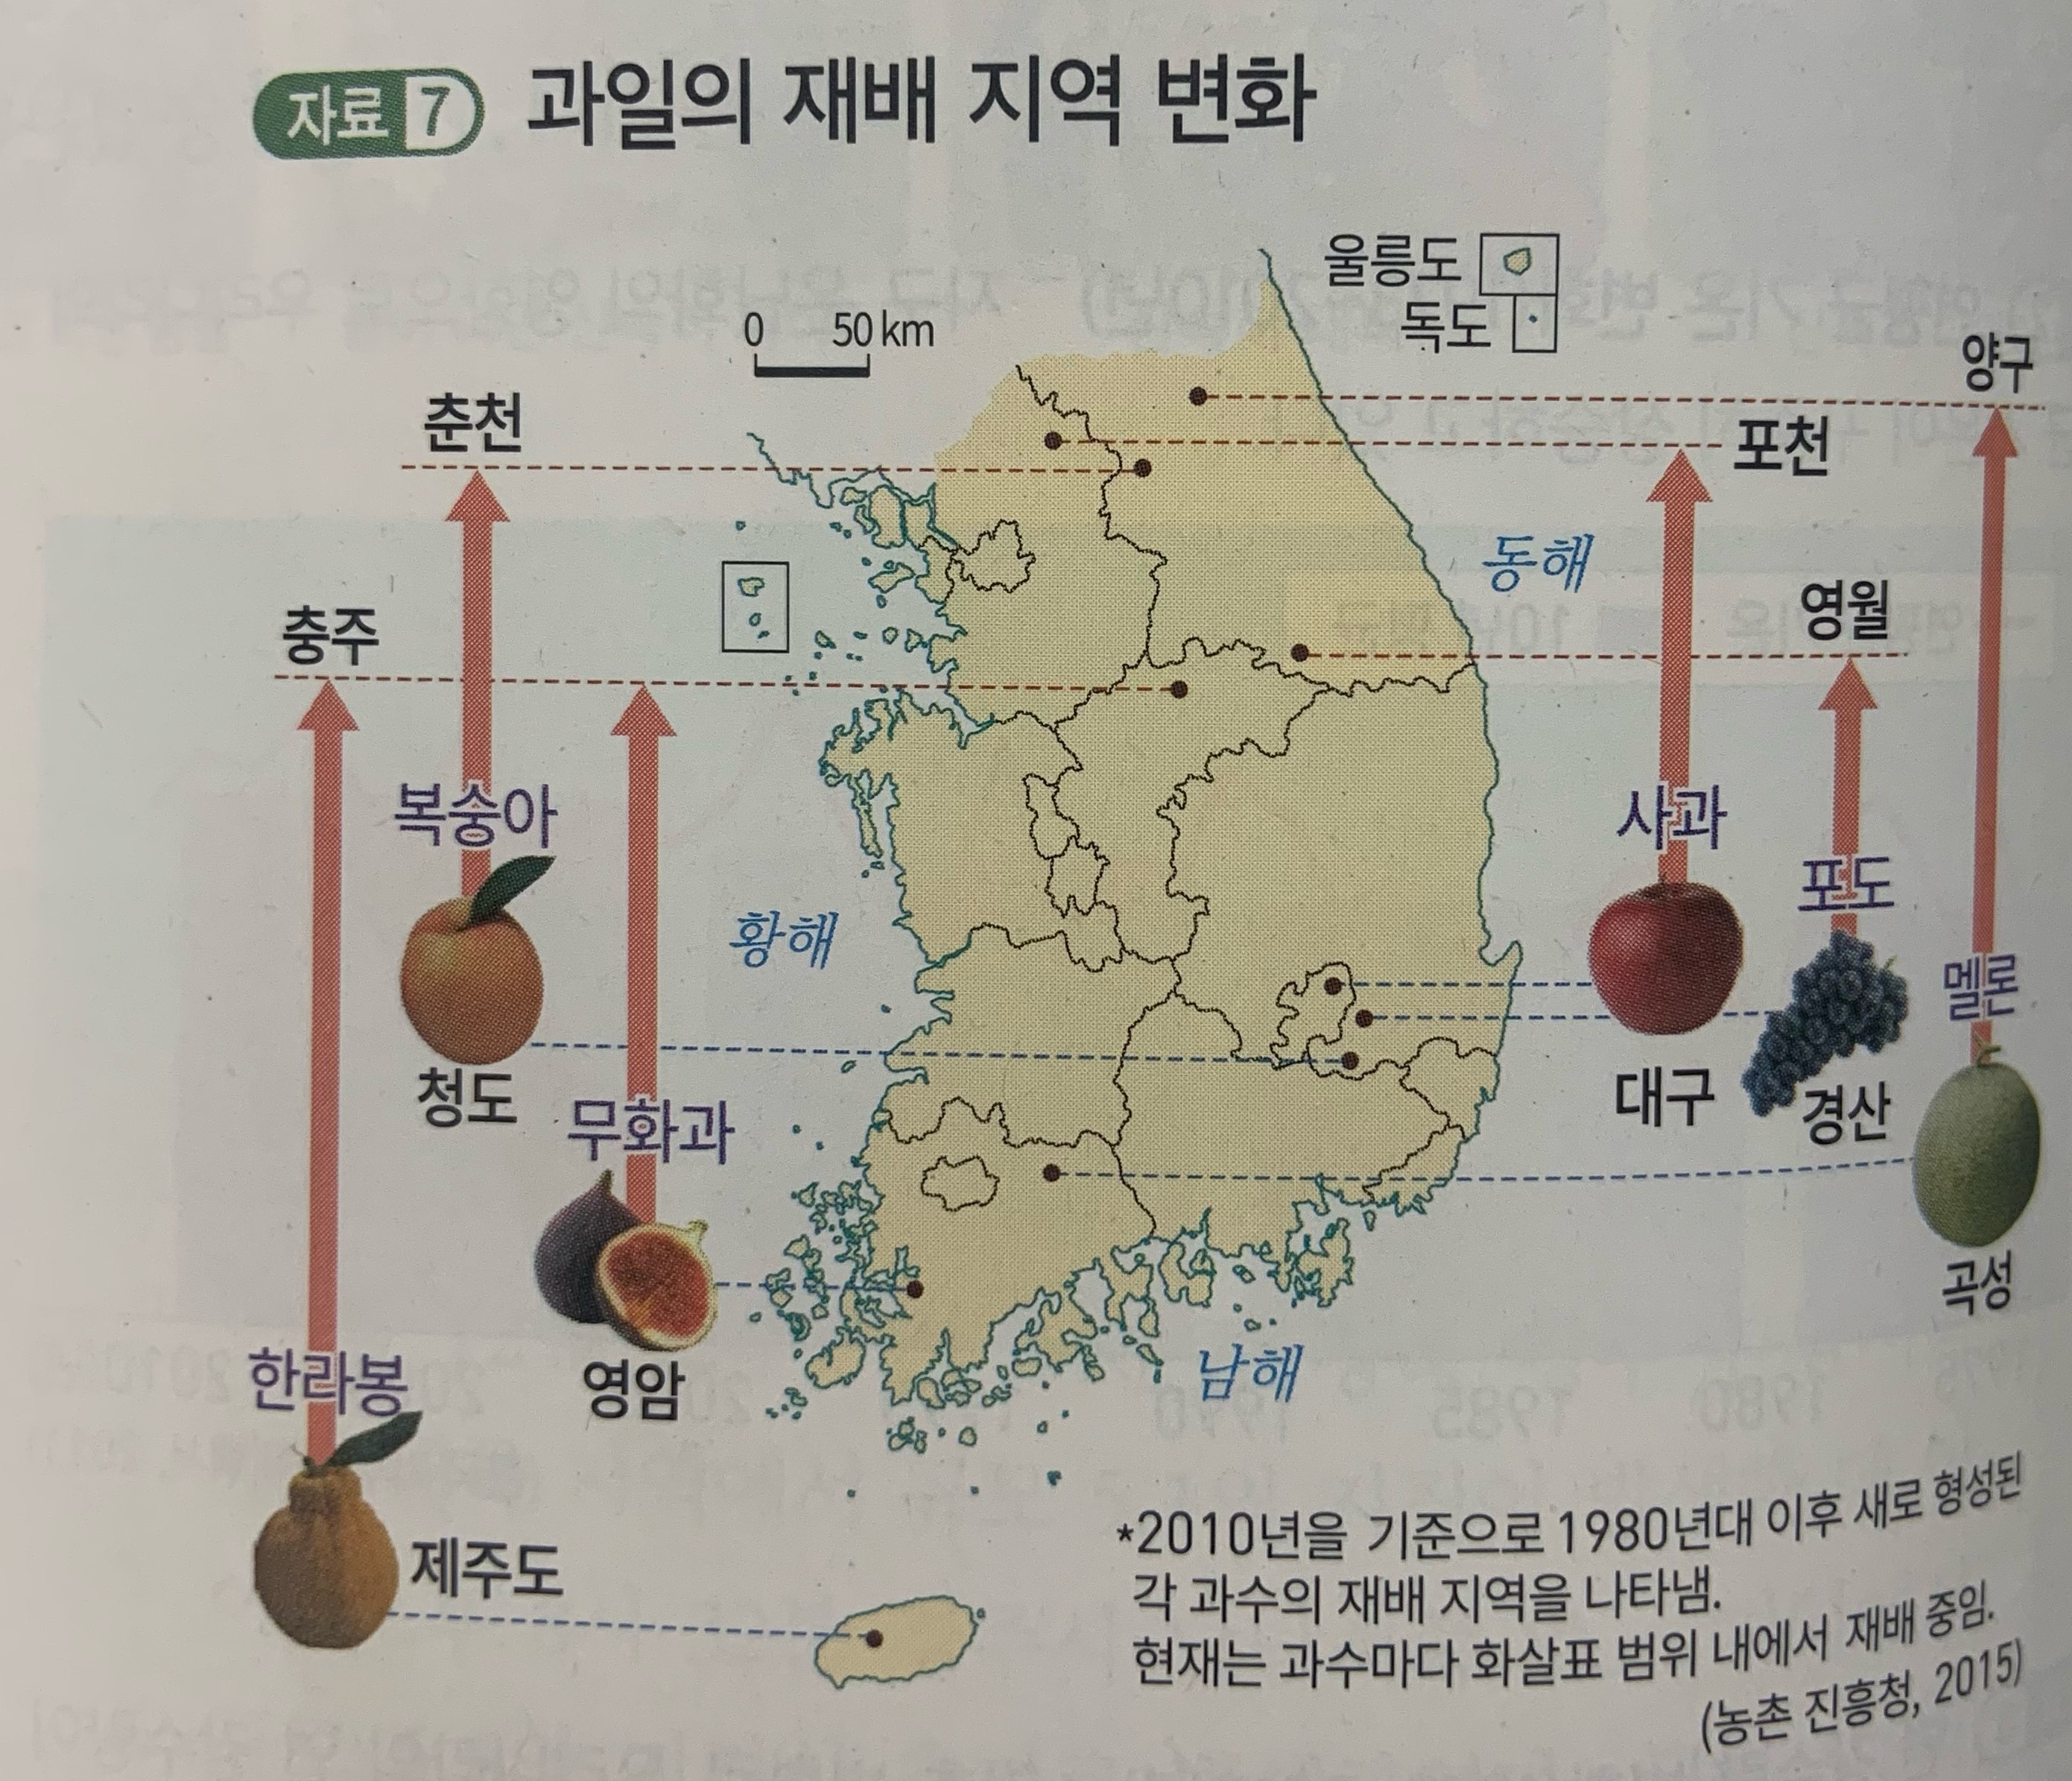  한국지리 교과서에 기후변화로 과일 재배지가 북상하고 있는 그림이 실려있다. 